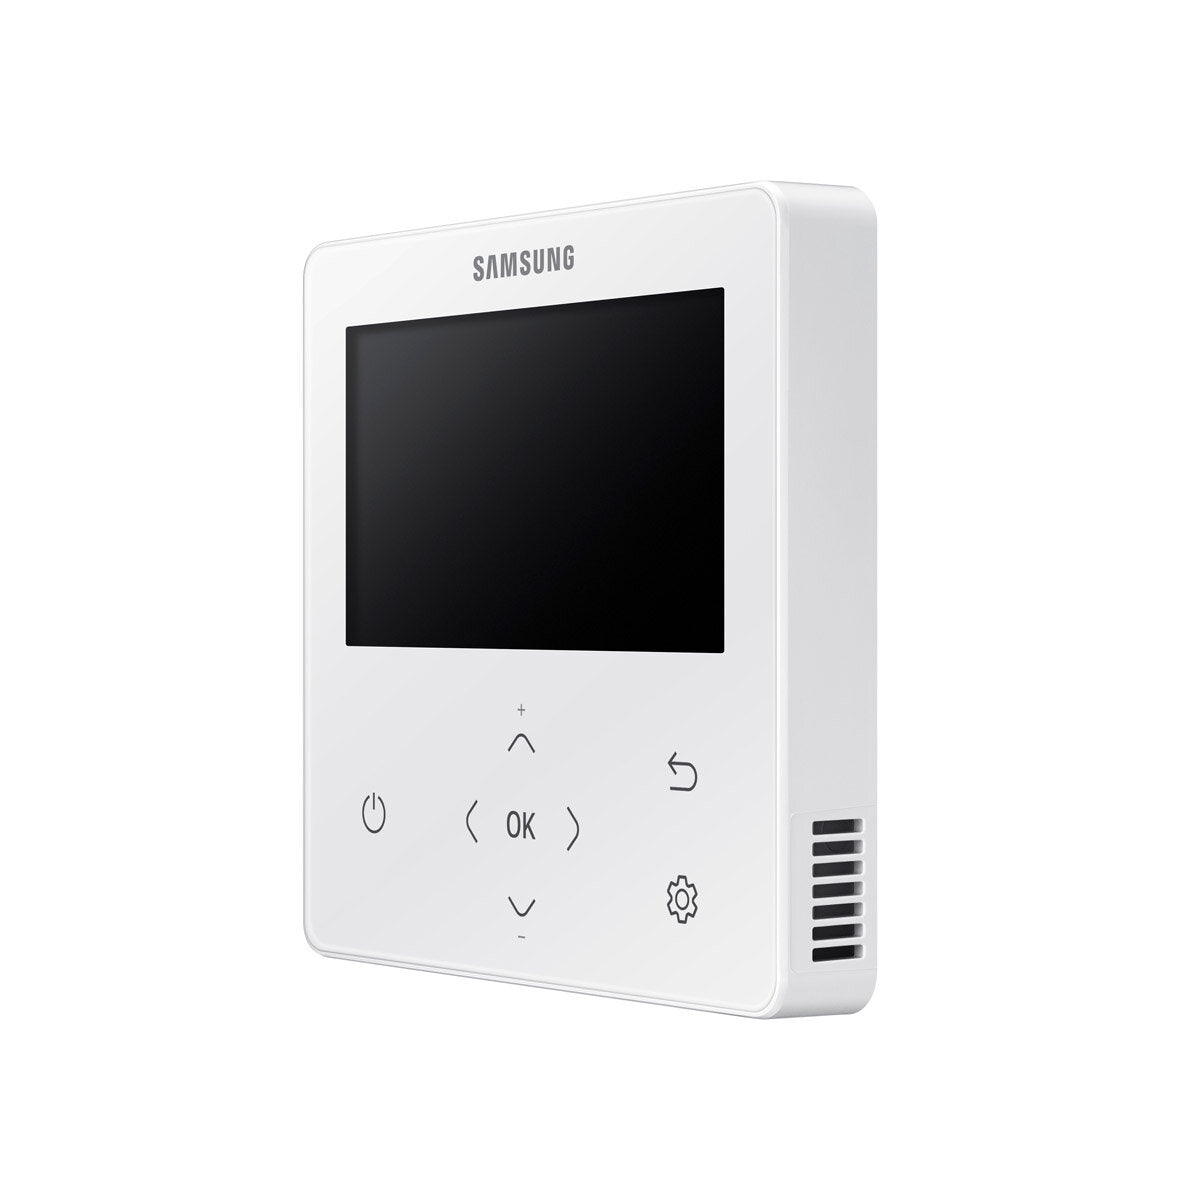 Samsung Air Conditioner WindFree Cassette 1 Way penta split 9000 + 9000 + 9000 + 9000 + 12000 BTU inverter A ++ outdoor unit 10.0 kW